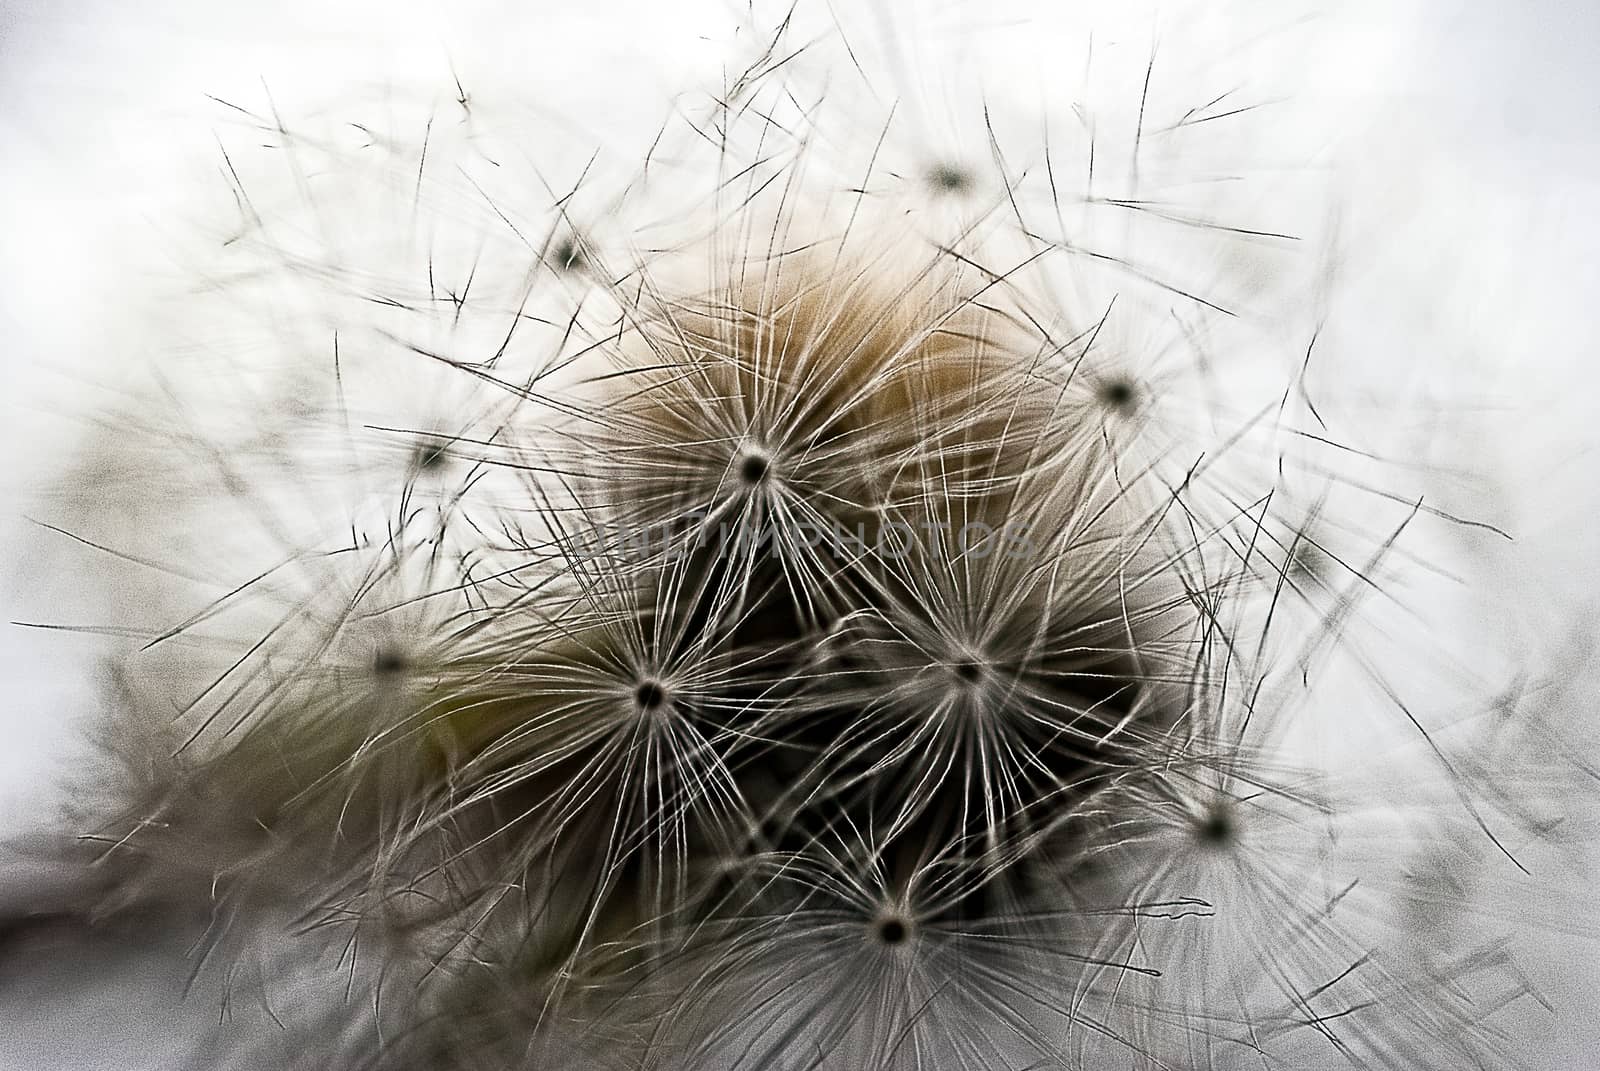 Dandelion seeds on a stem